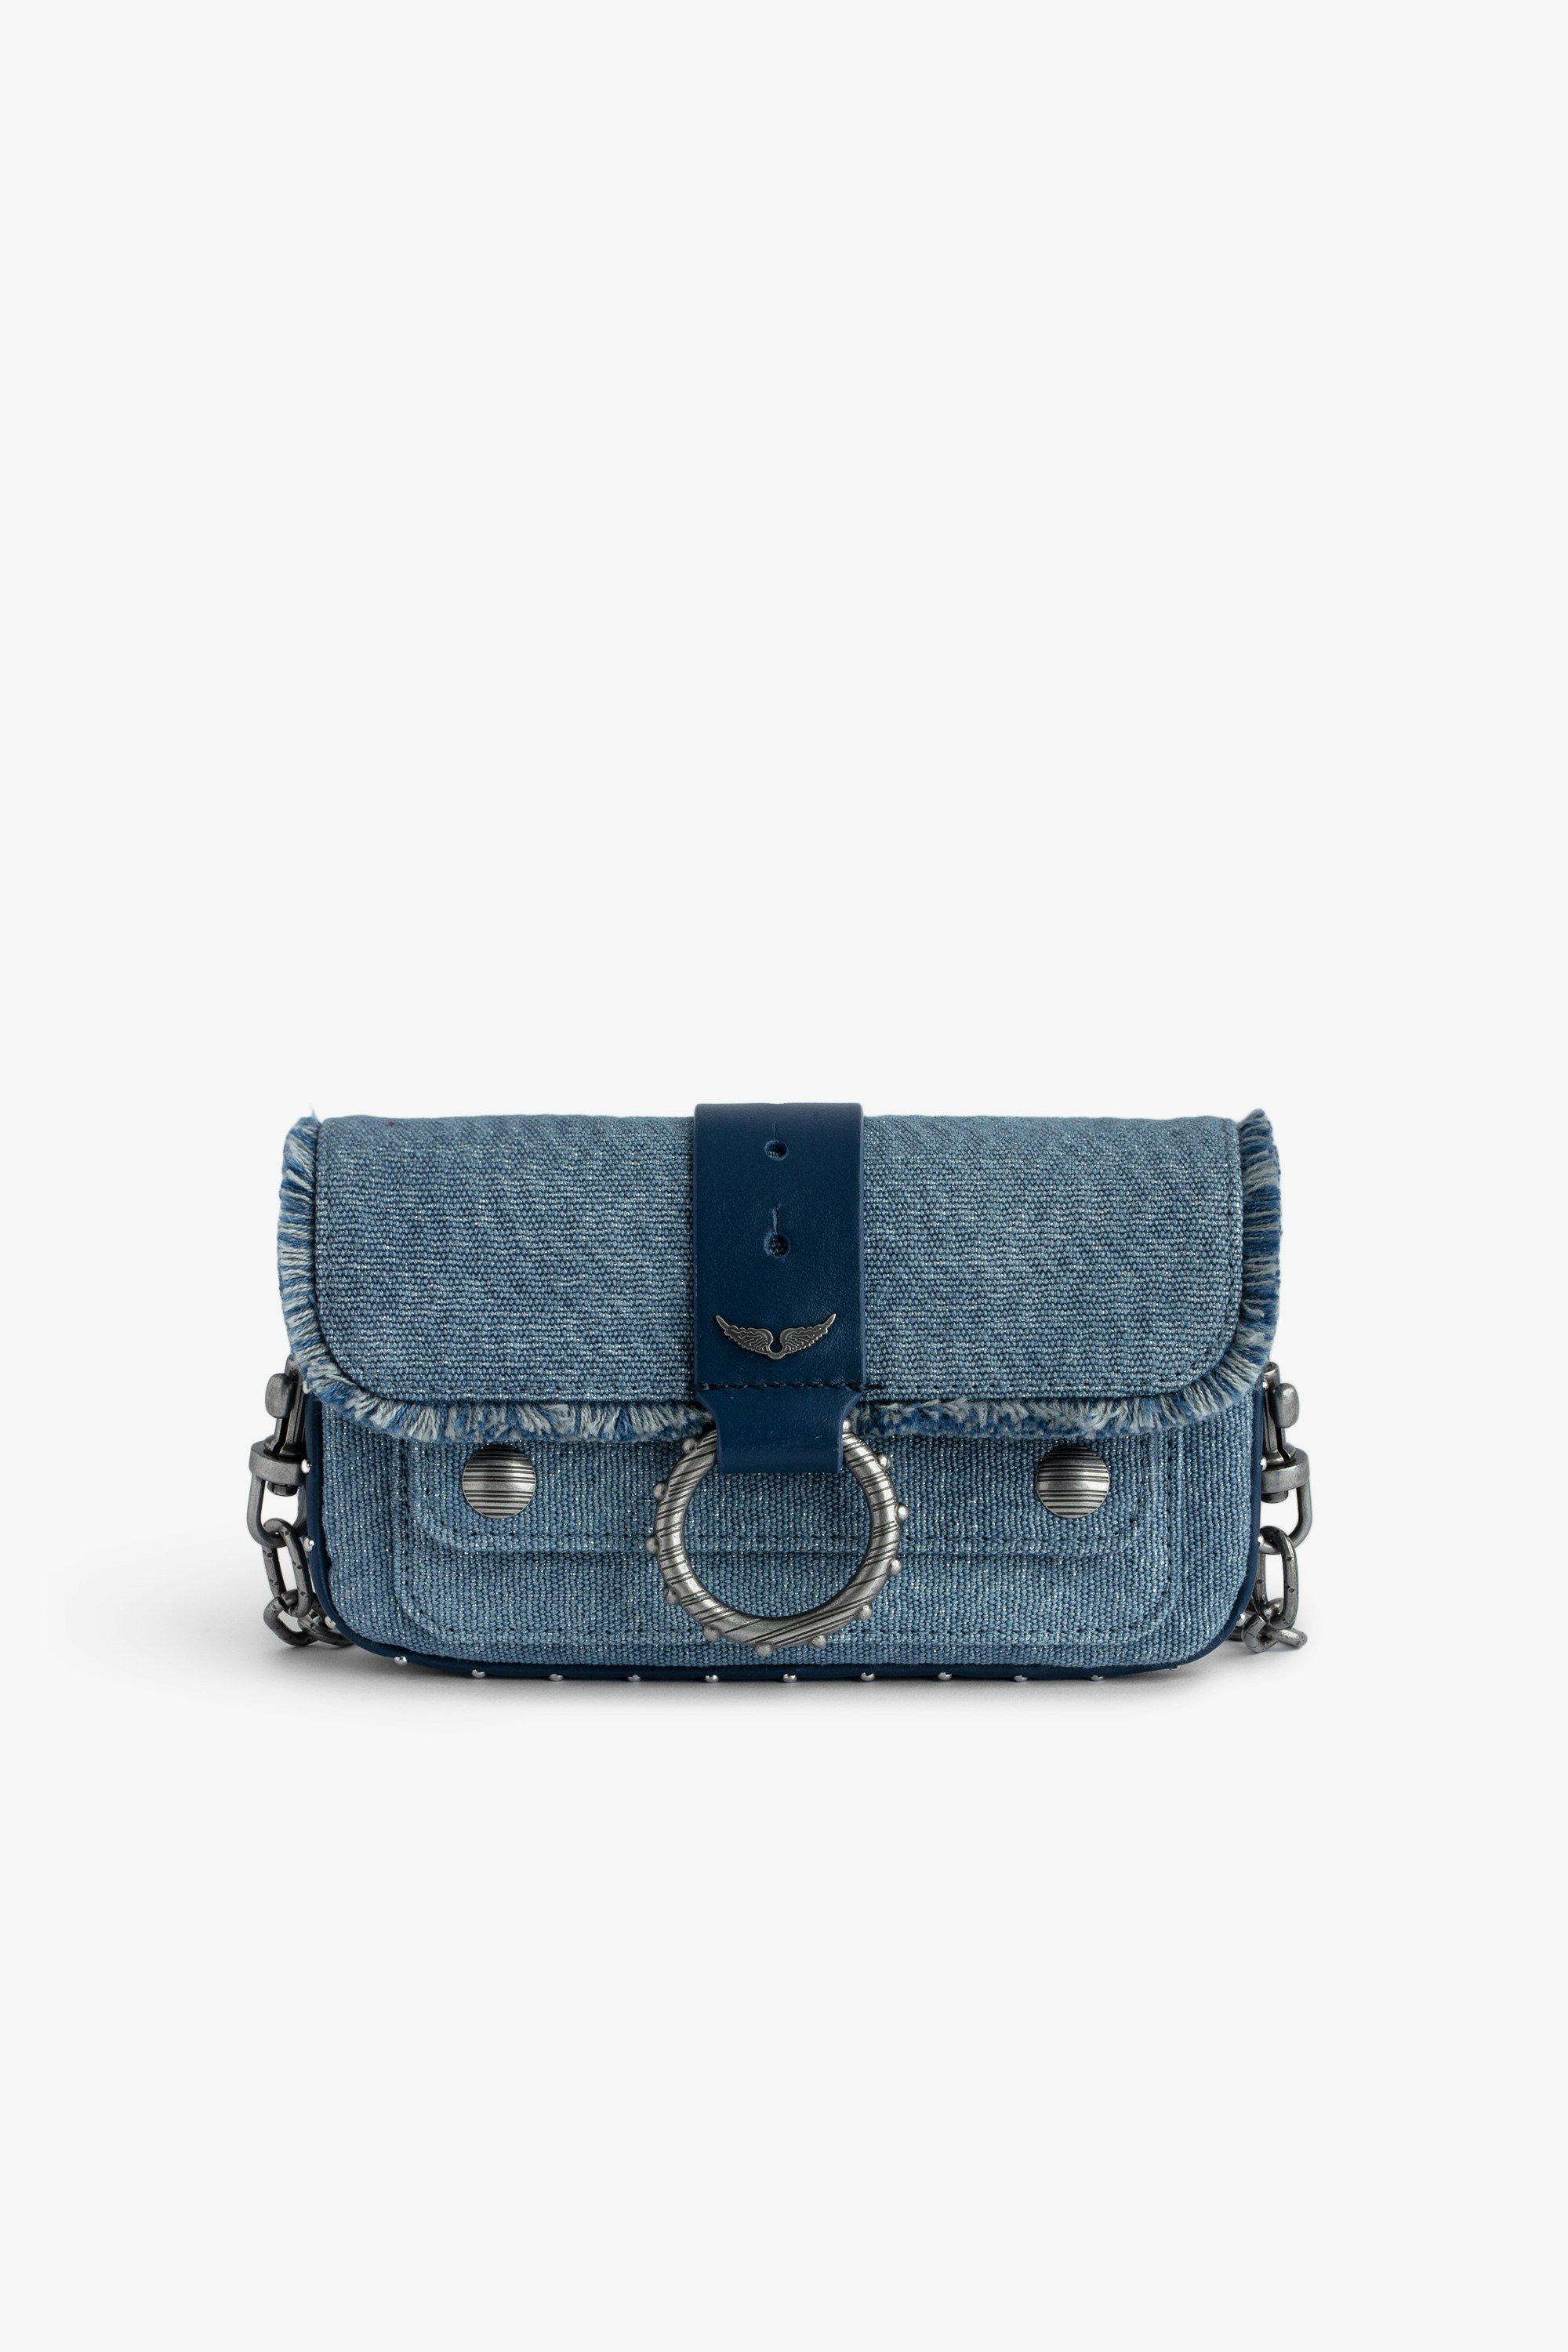 Tasche Kate Wallet Denim - Mini-Handtasche aus Glitter-Denim mit Metallkette, Lederschlaufe und Fransen.